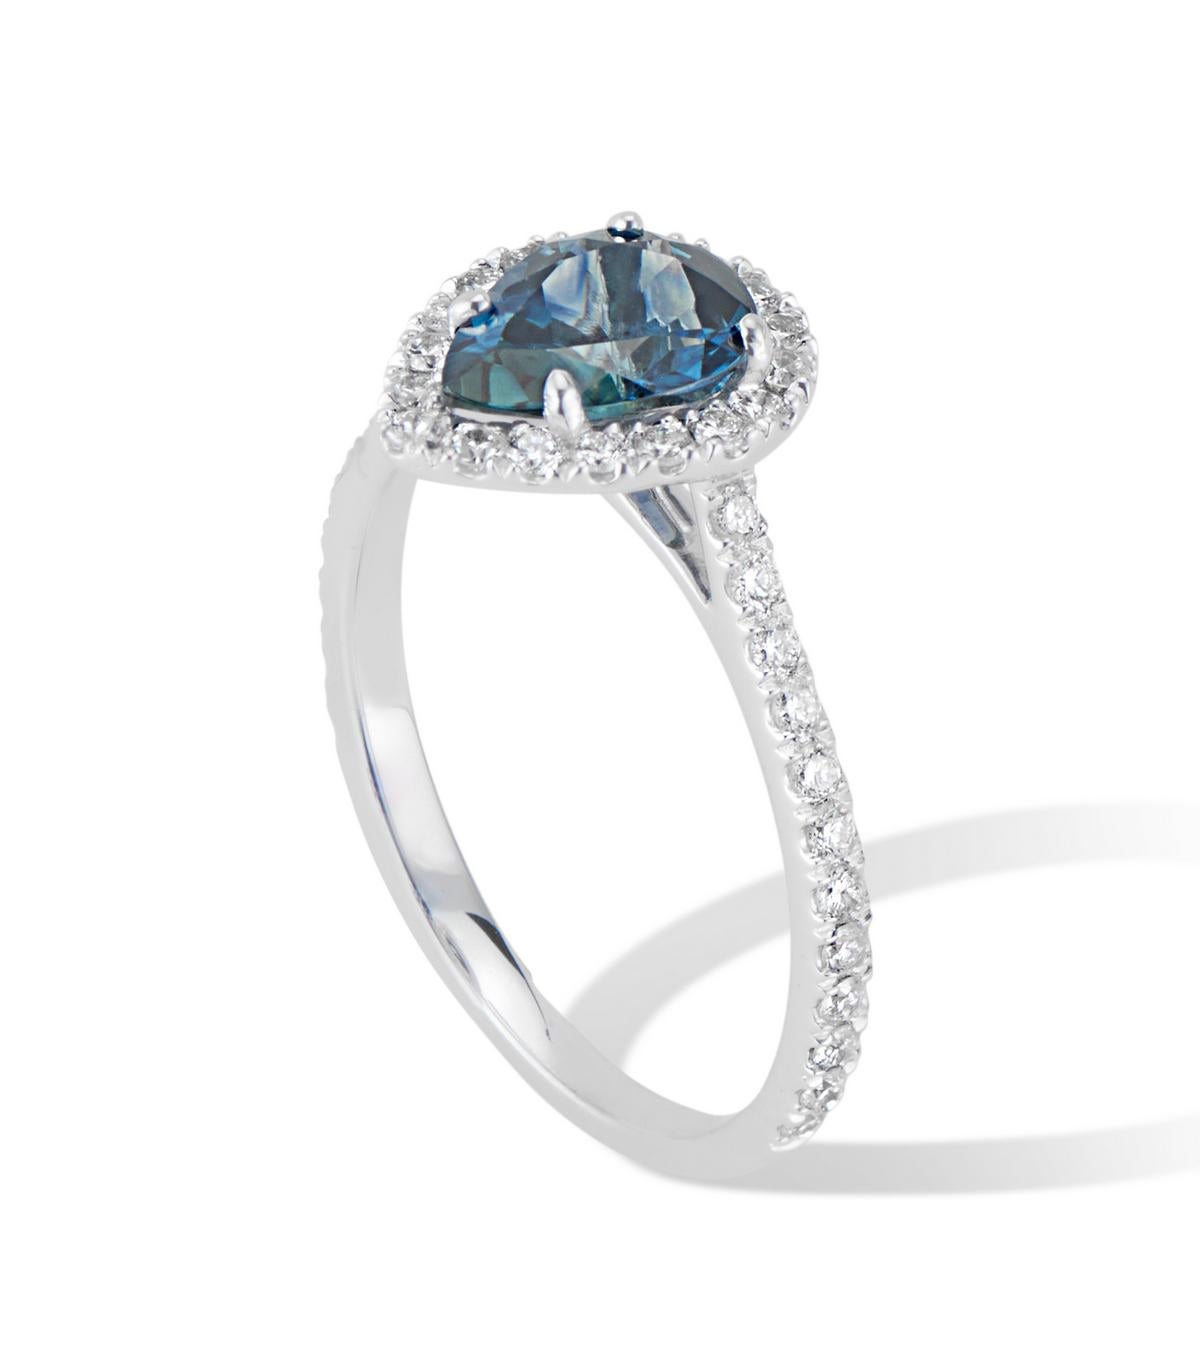 Ein atemberaubender birnenförmiger Montana-Saphir von 1,31 Karat, eingefasst in einen funkelnden Halo aus weißen Diamanten in VS-Qualität, ergibt einen exquisiten modernen klassischen Ring.
Dieser wunderschöne Ring ist in eine hochwertige